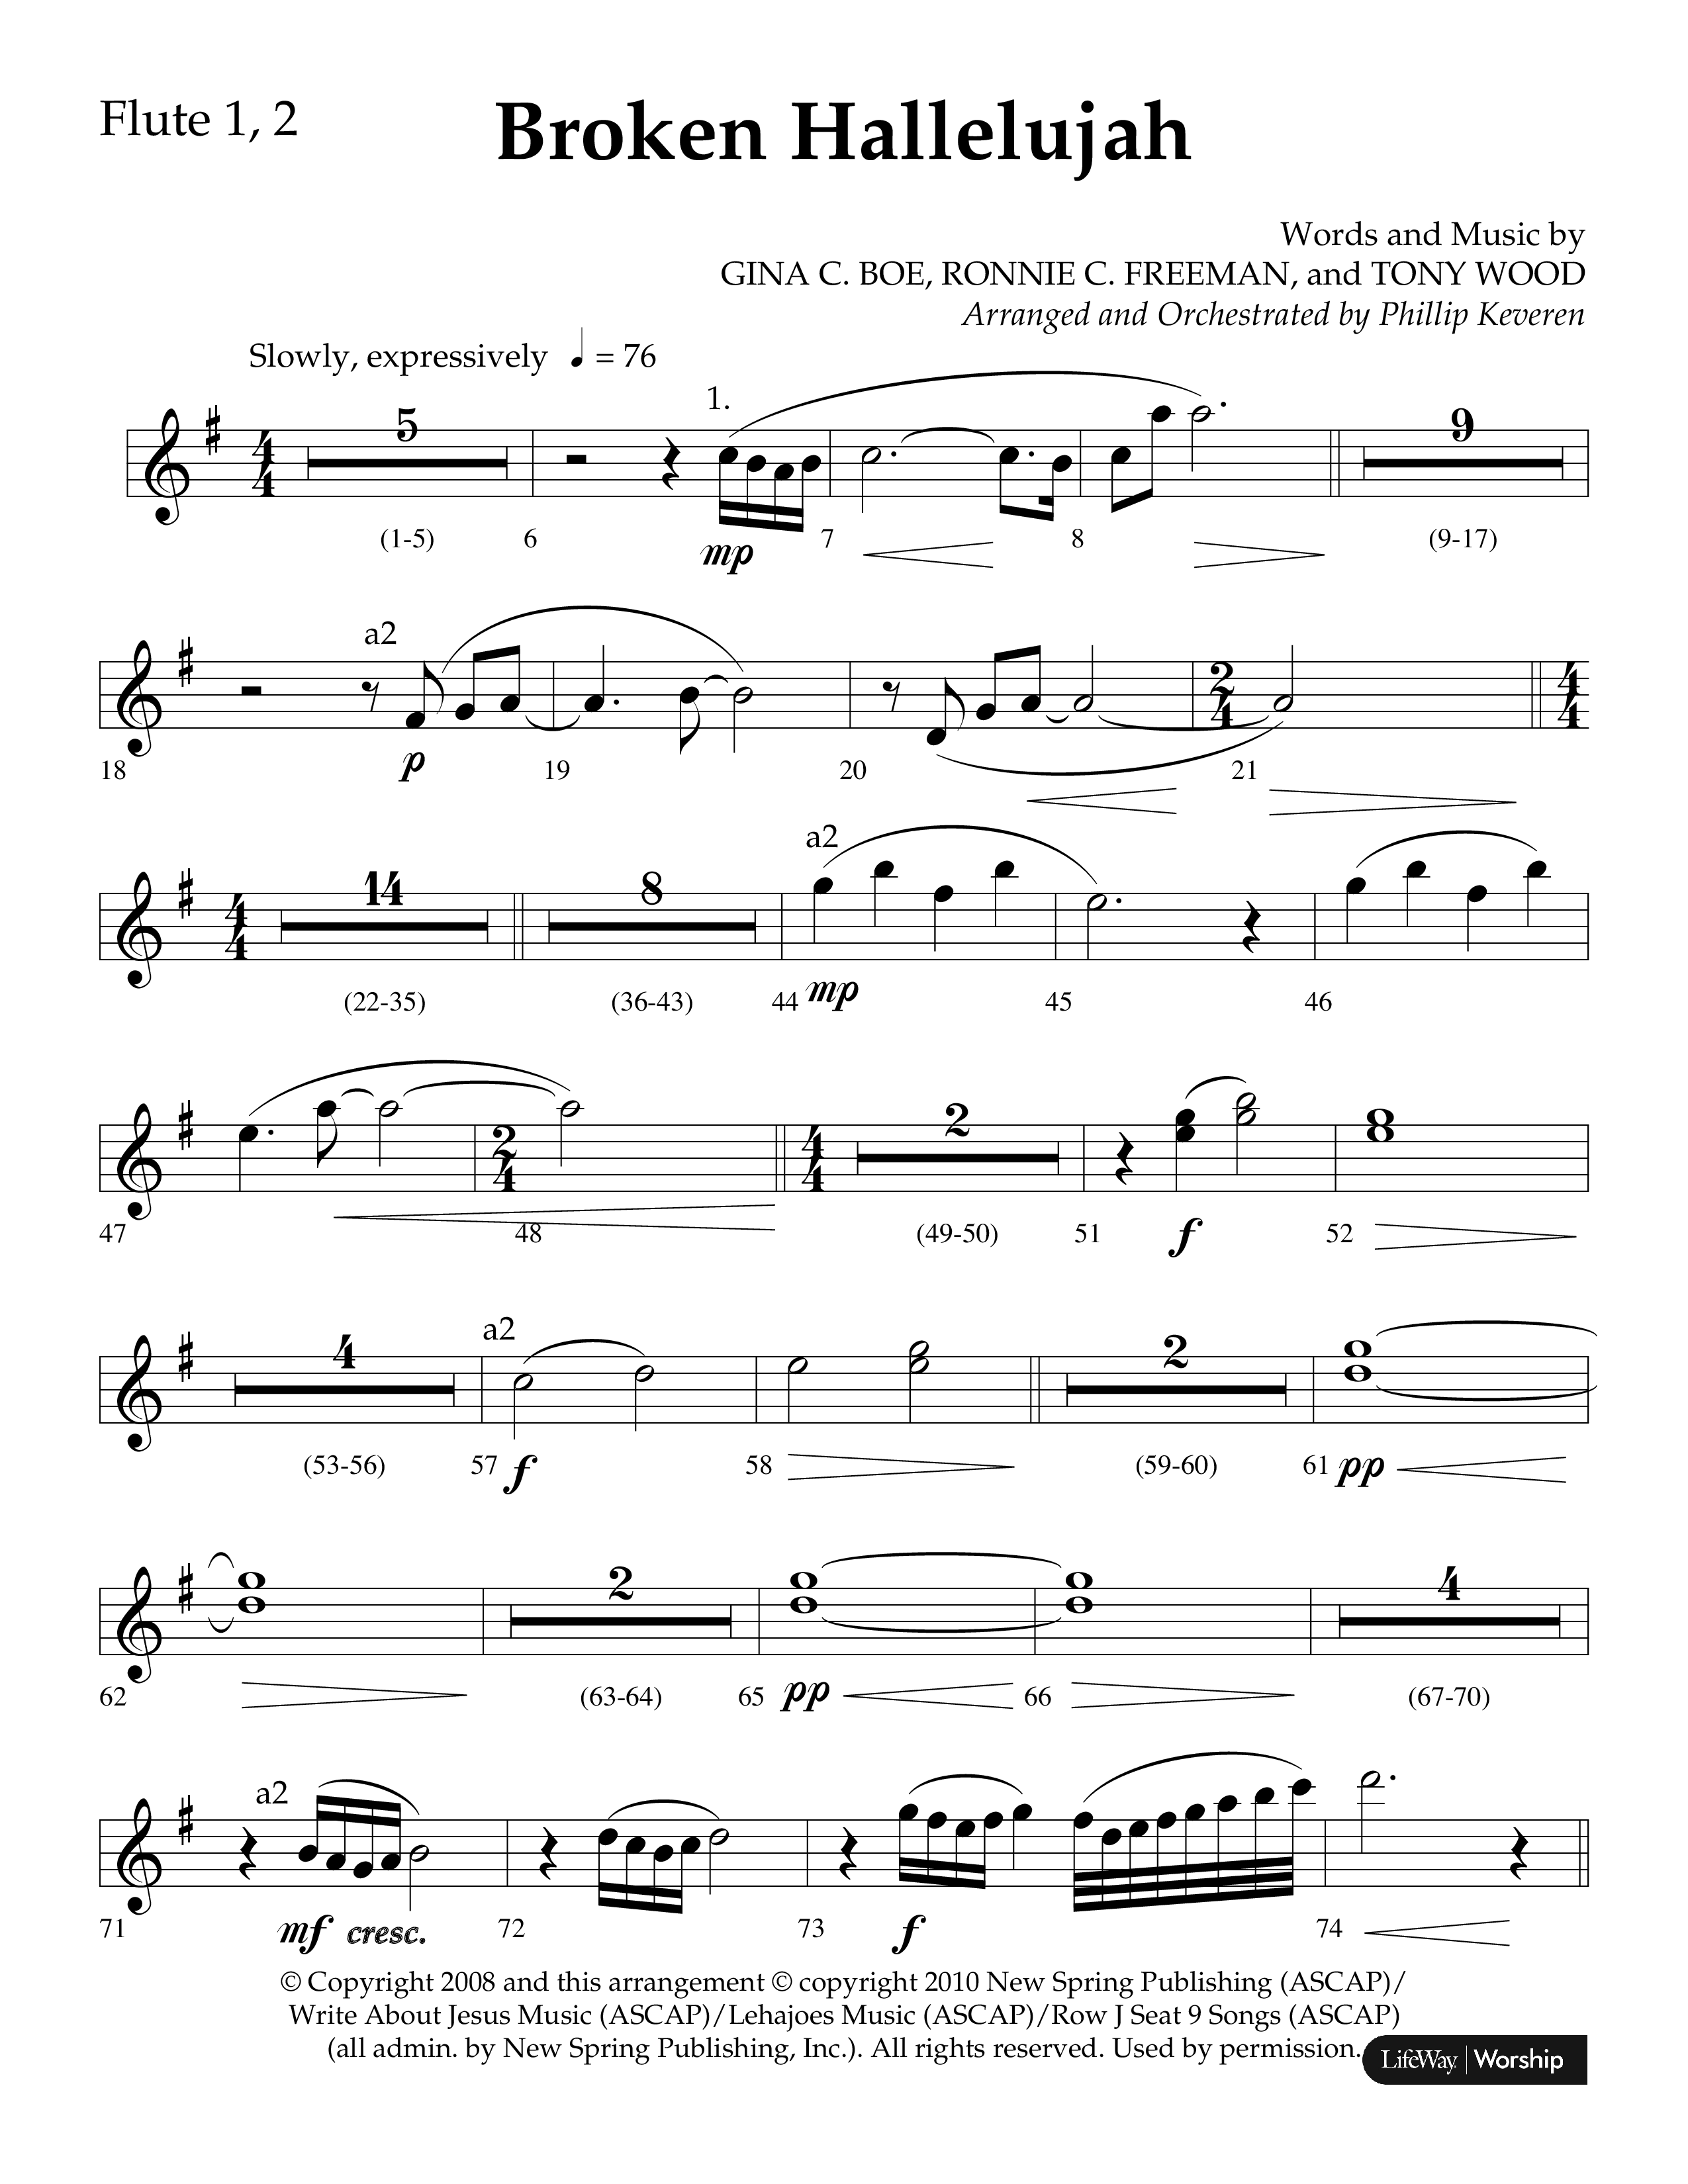 Broken Hallelujah (Choral Anthem SATB) Flute 1/2 (Lifeway Choral / Arr. Phillip Keveren)